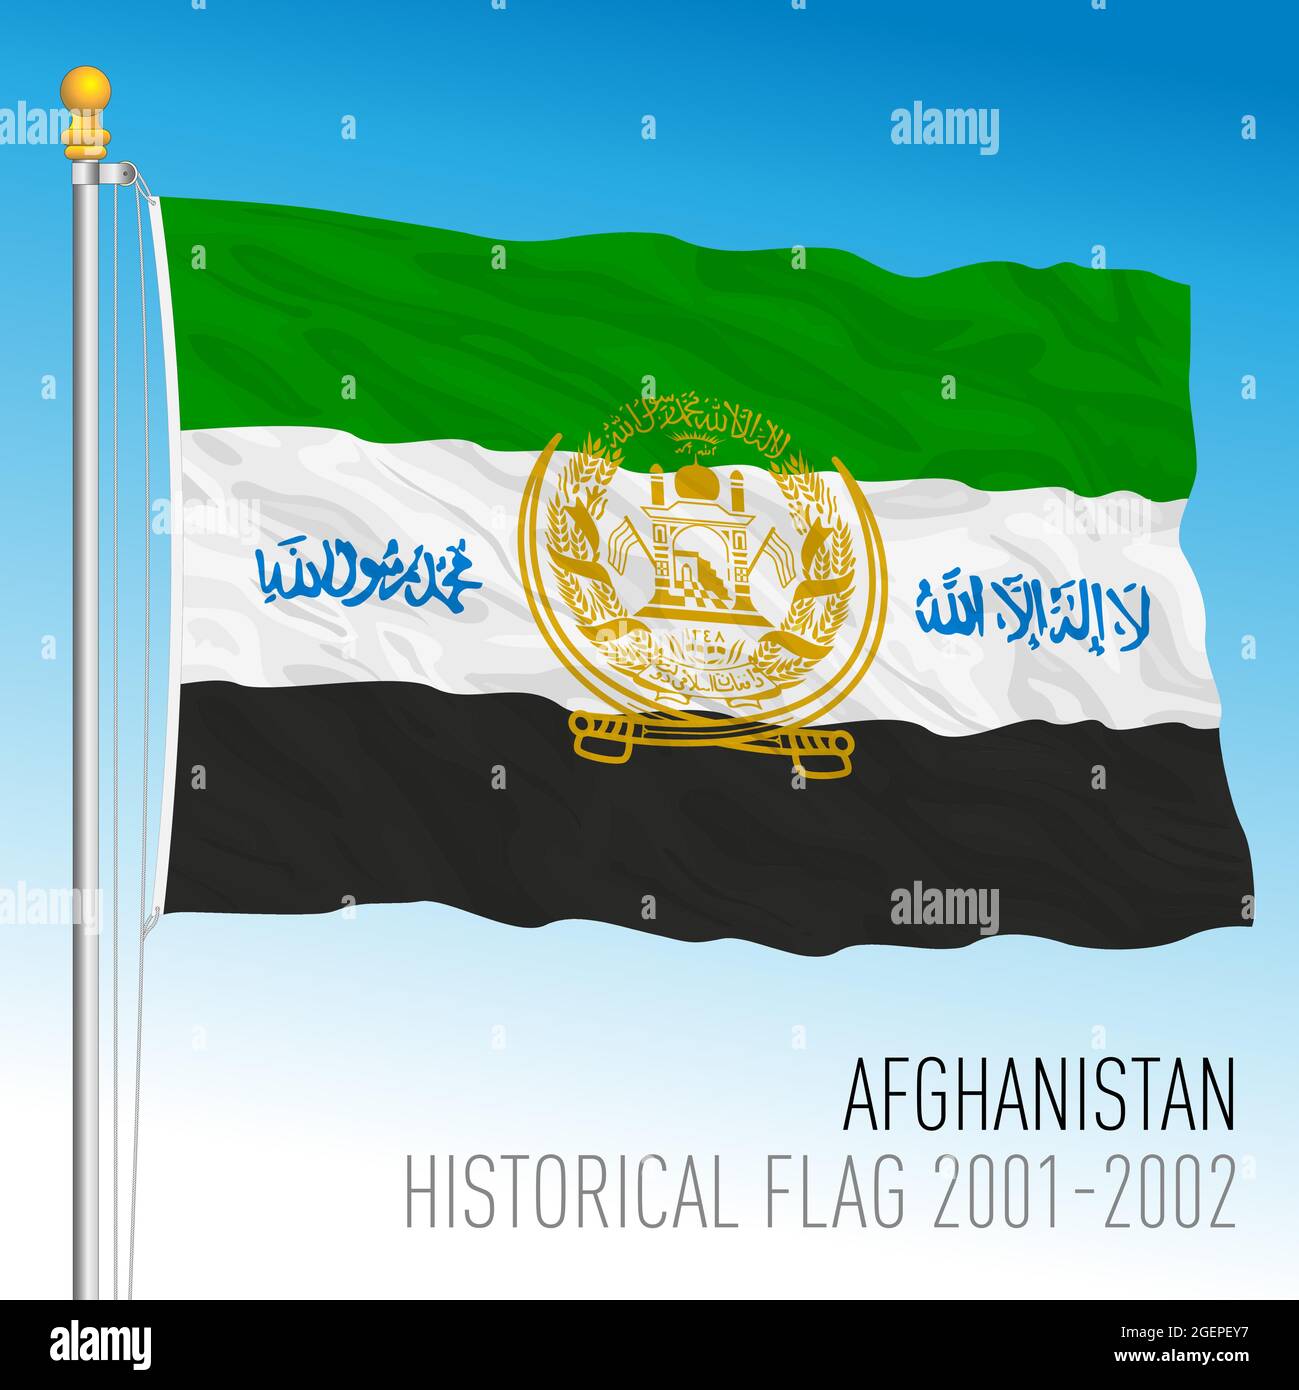 Drapeau historique de l'Afghanistan, années 2001 à 2002, pays asiatique, illustration vectorielle Illustration de Vecteur